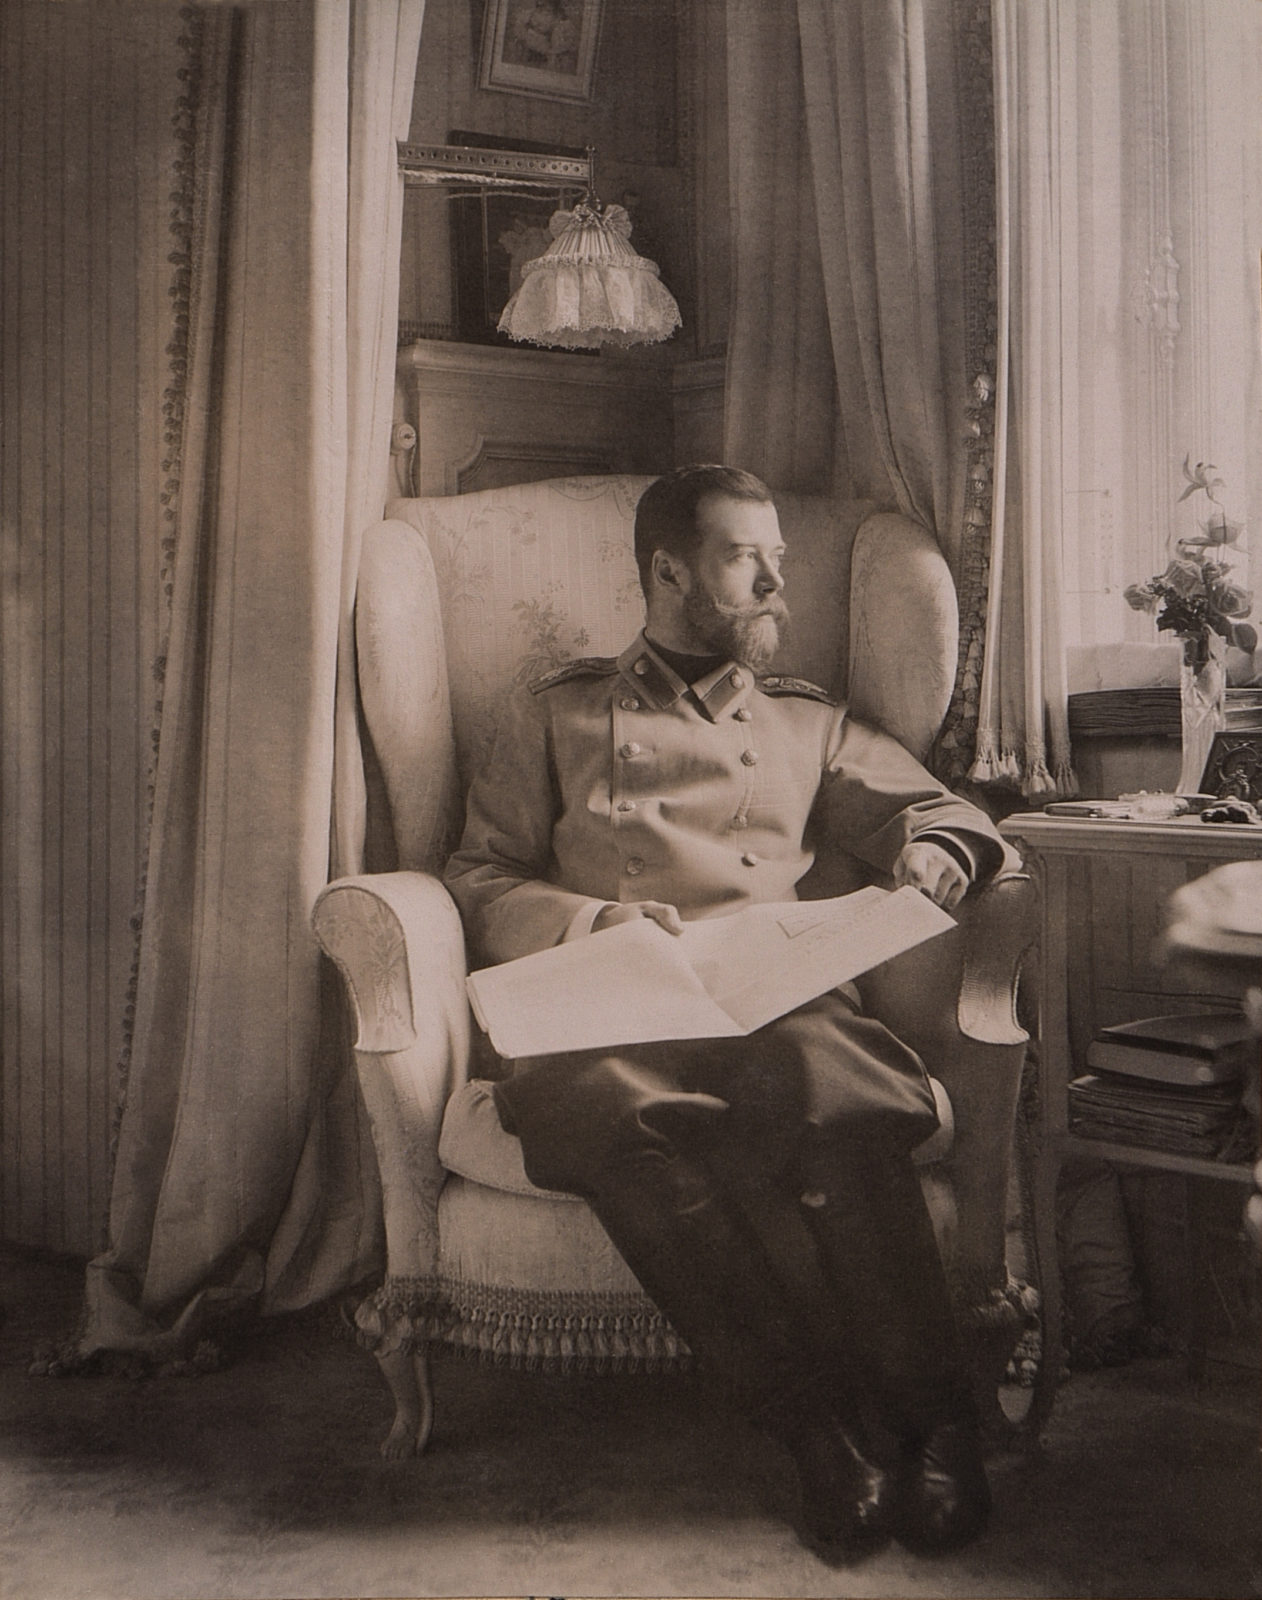 Фото последнего императора россии